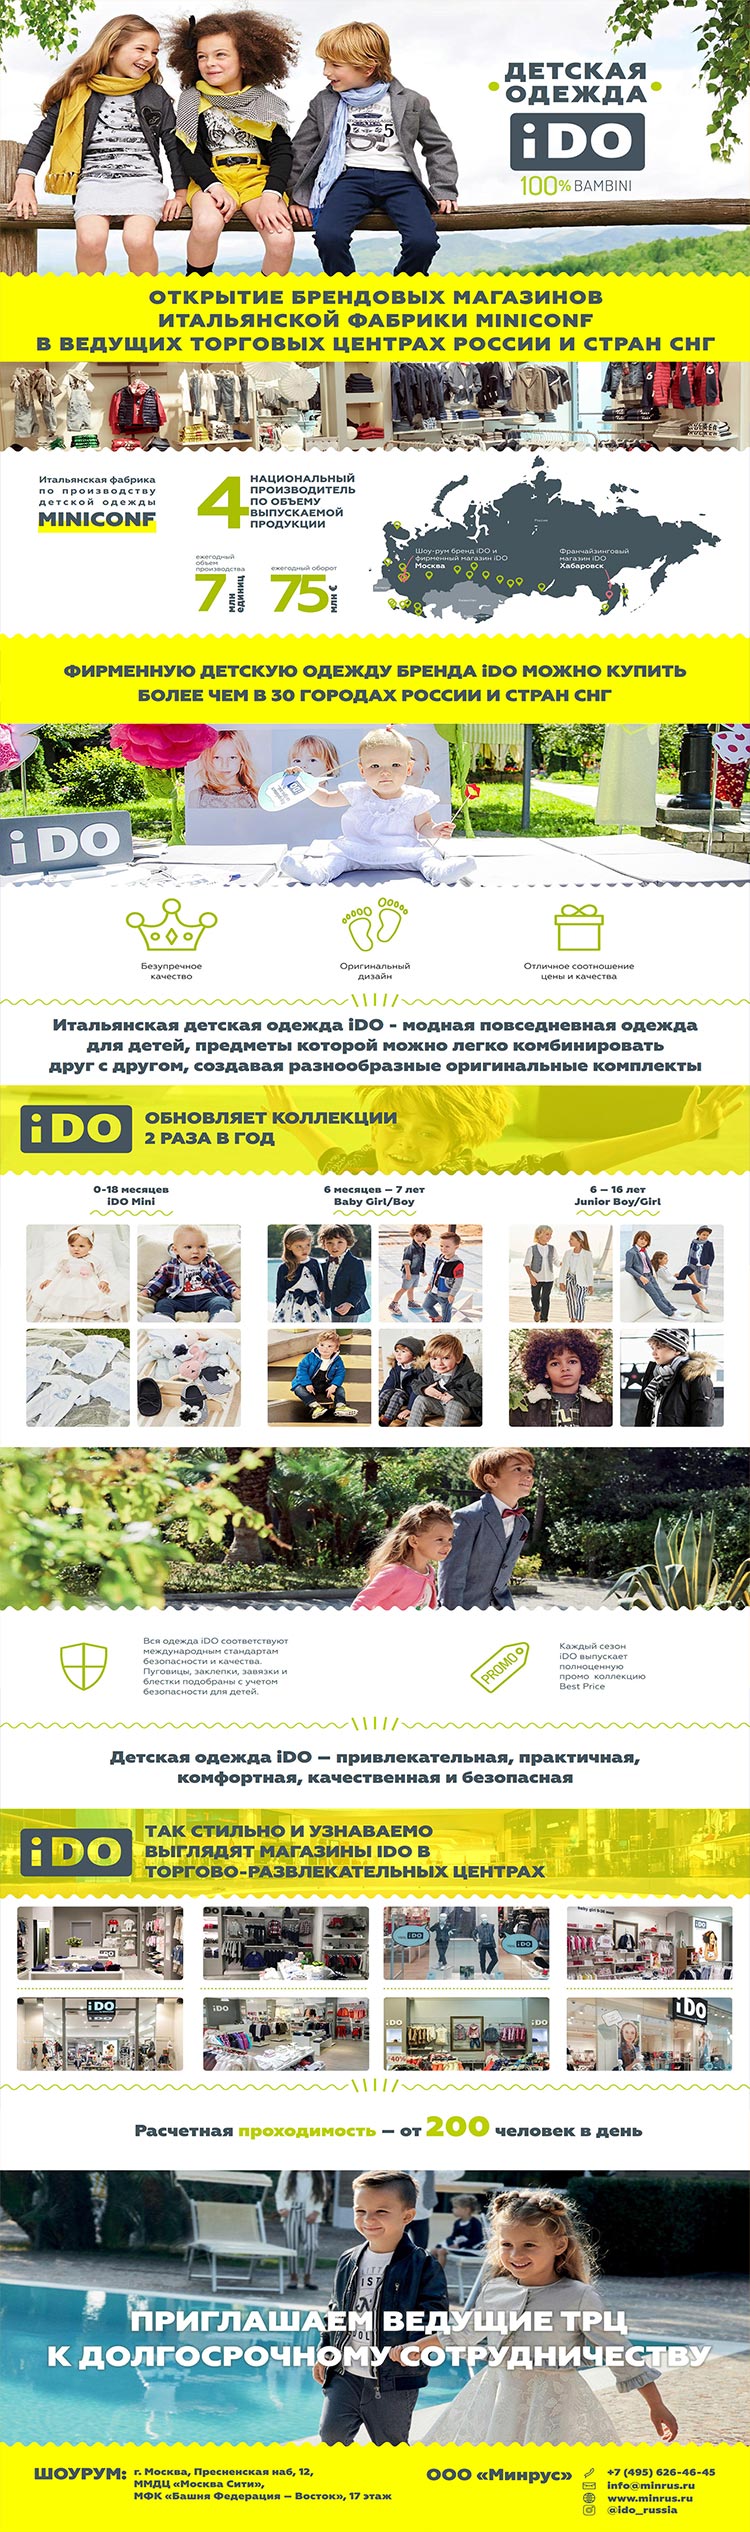 Презентация магазинов детской одежды iDO для ТЦ для клиента